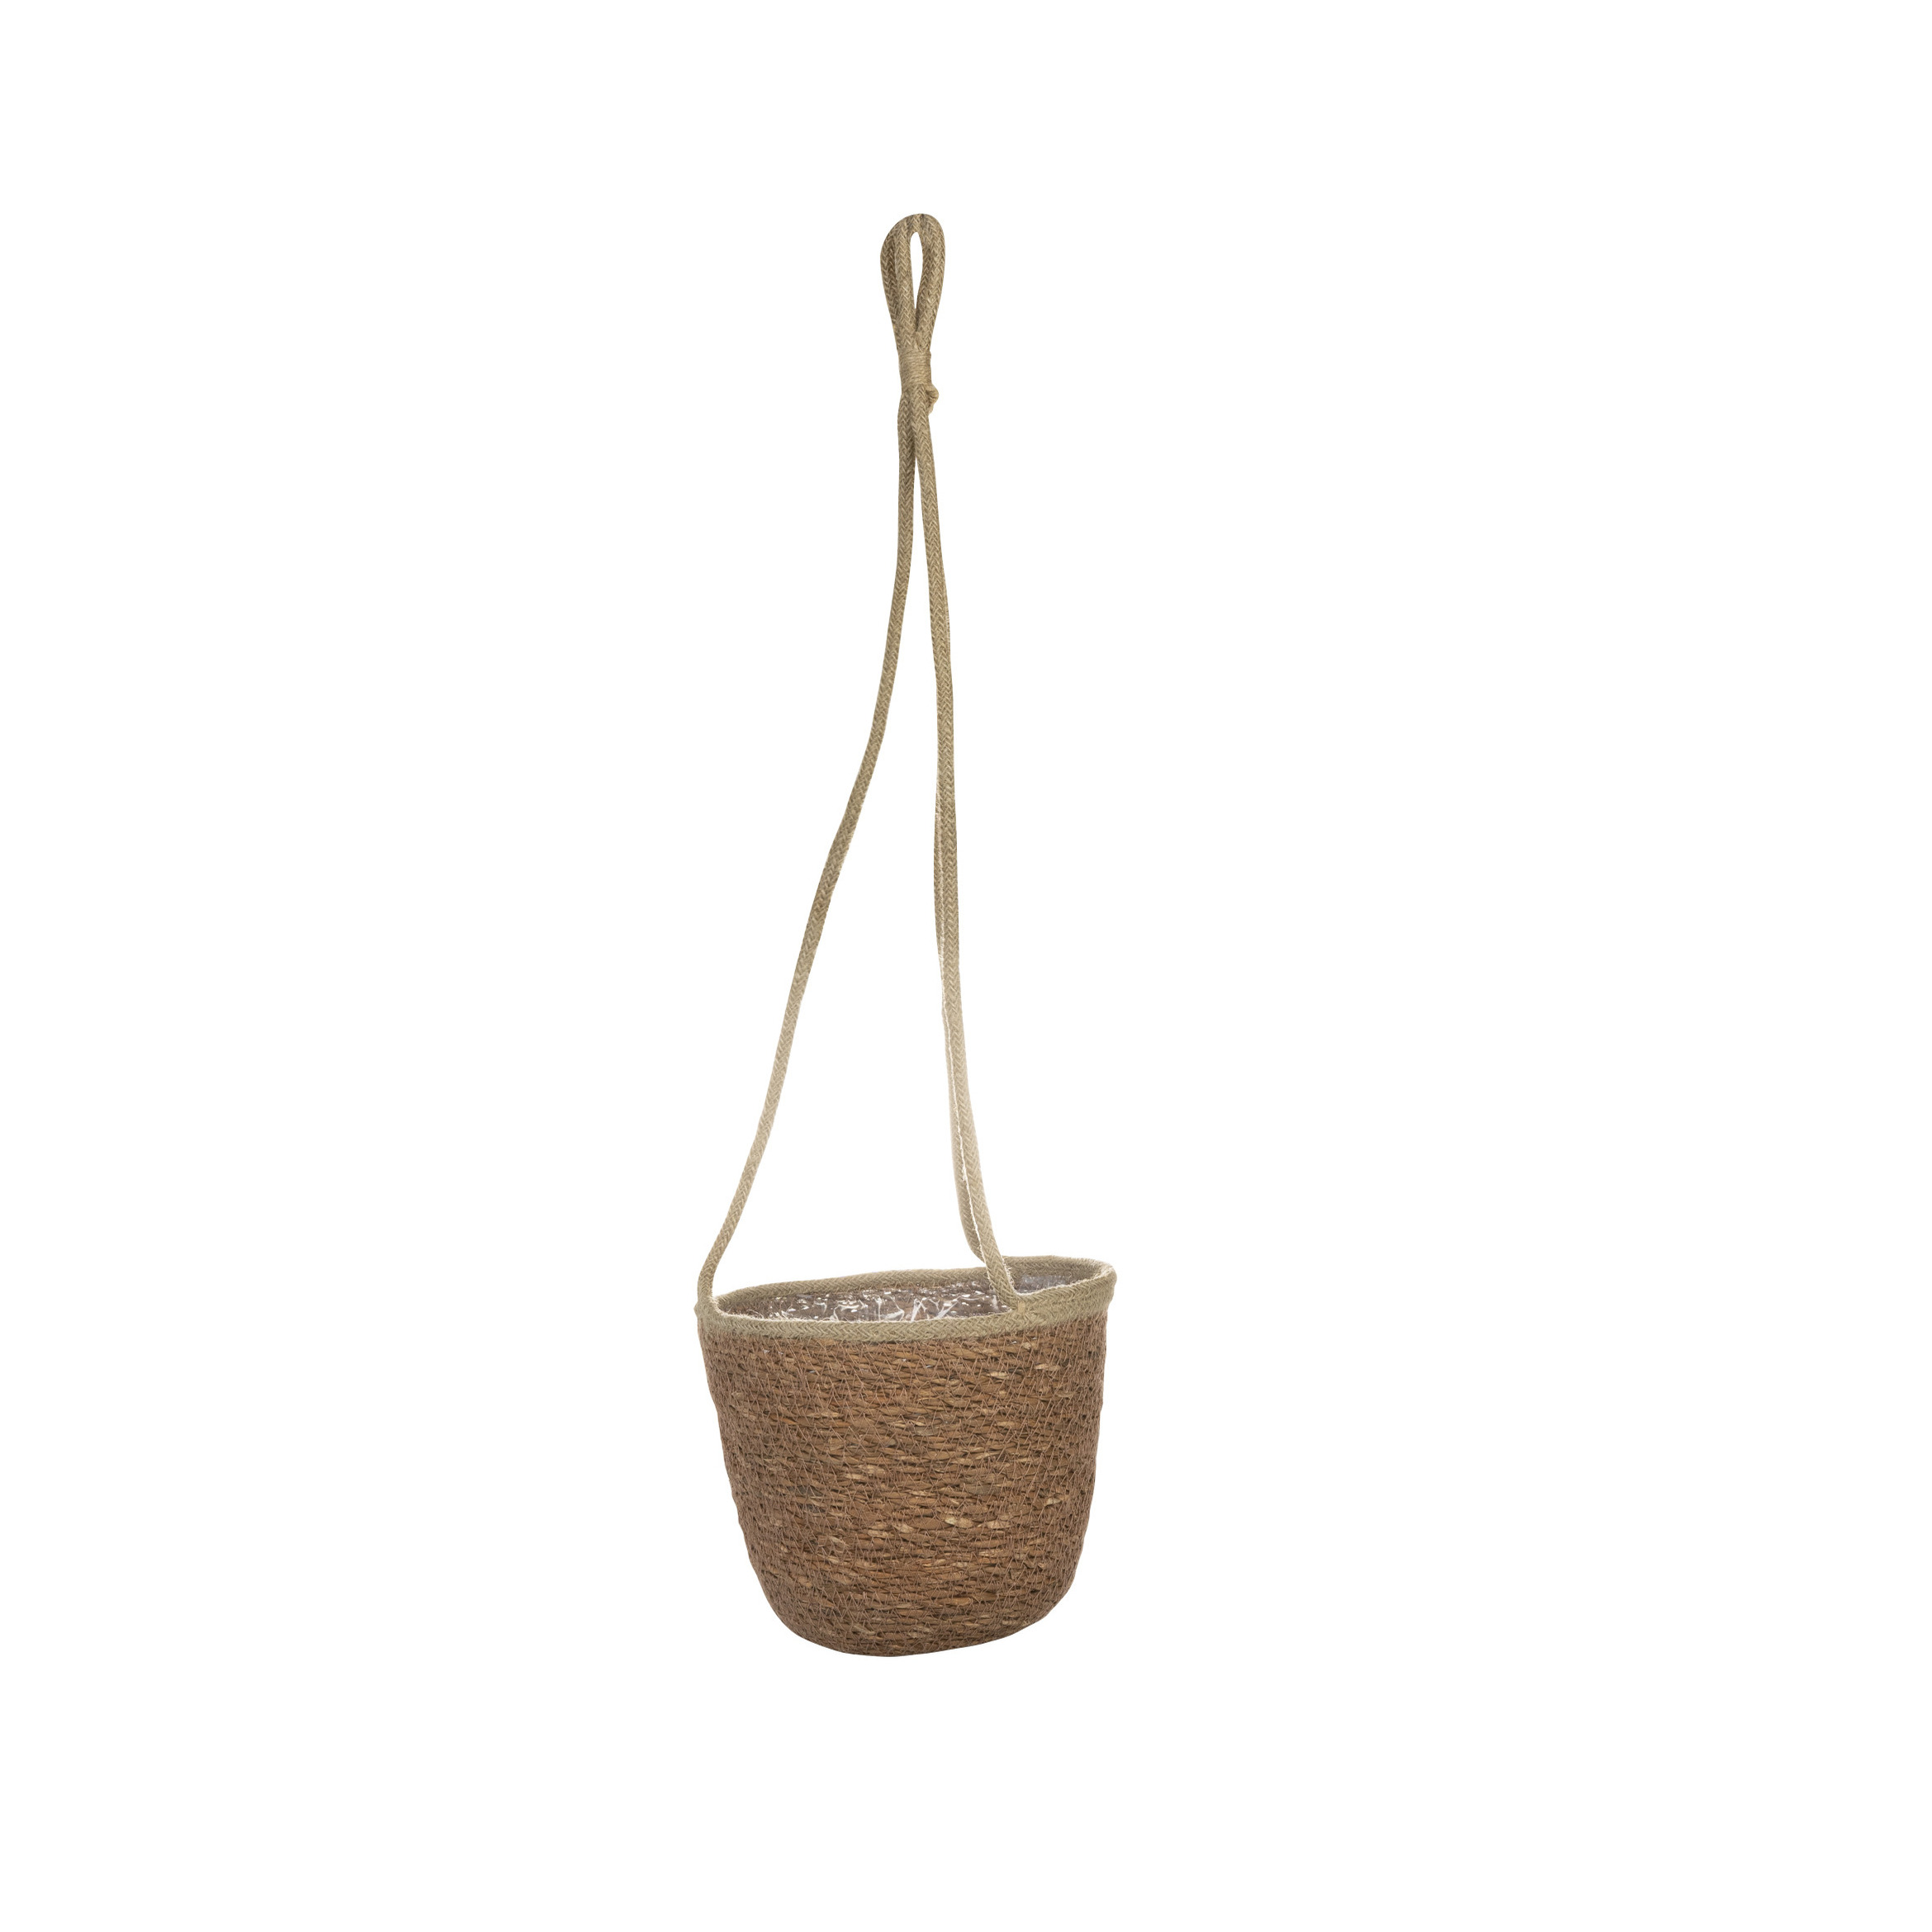 Ter Steege Hangende plantenpot/bloempot van jute/zeegras diameter 19 cm en hoogte 17 cm camel bruin -